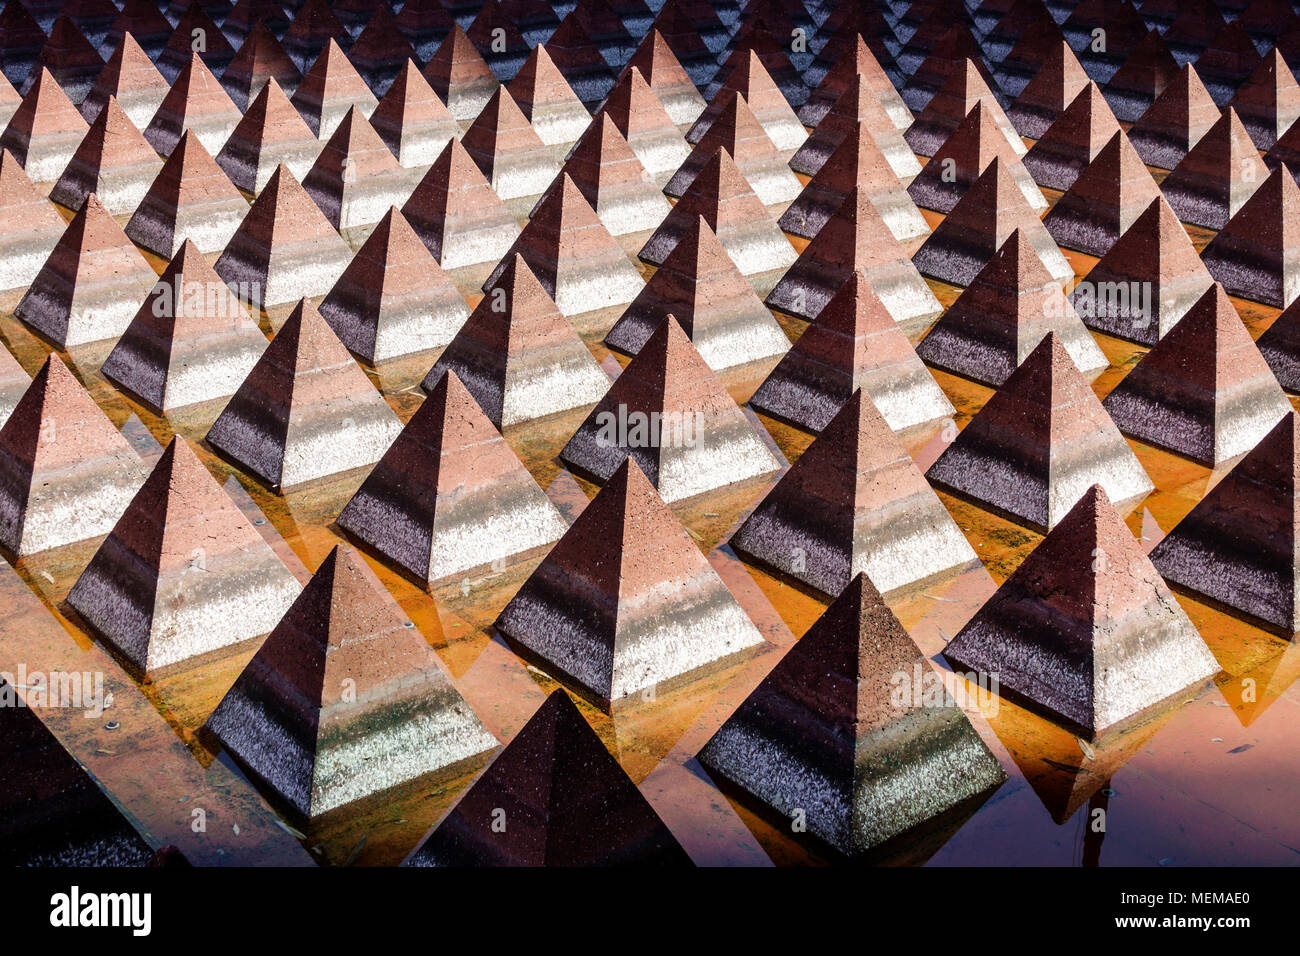 Ciudad de México, Centro Histórico Mexicano, Centro Histórico, Plaza Juárez fuente de arte público, pirámide Vicente Rojo formas geométricas, Foto de stock